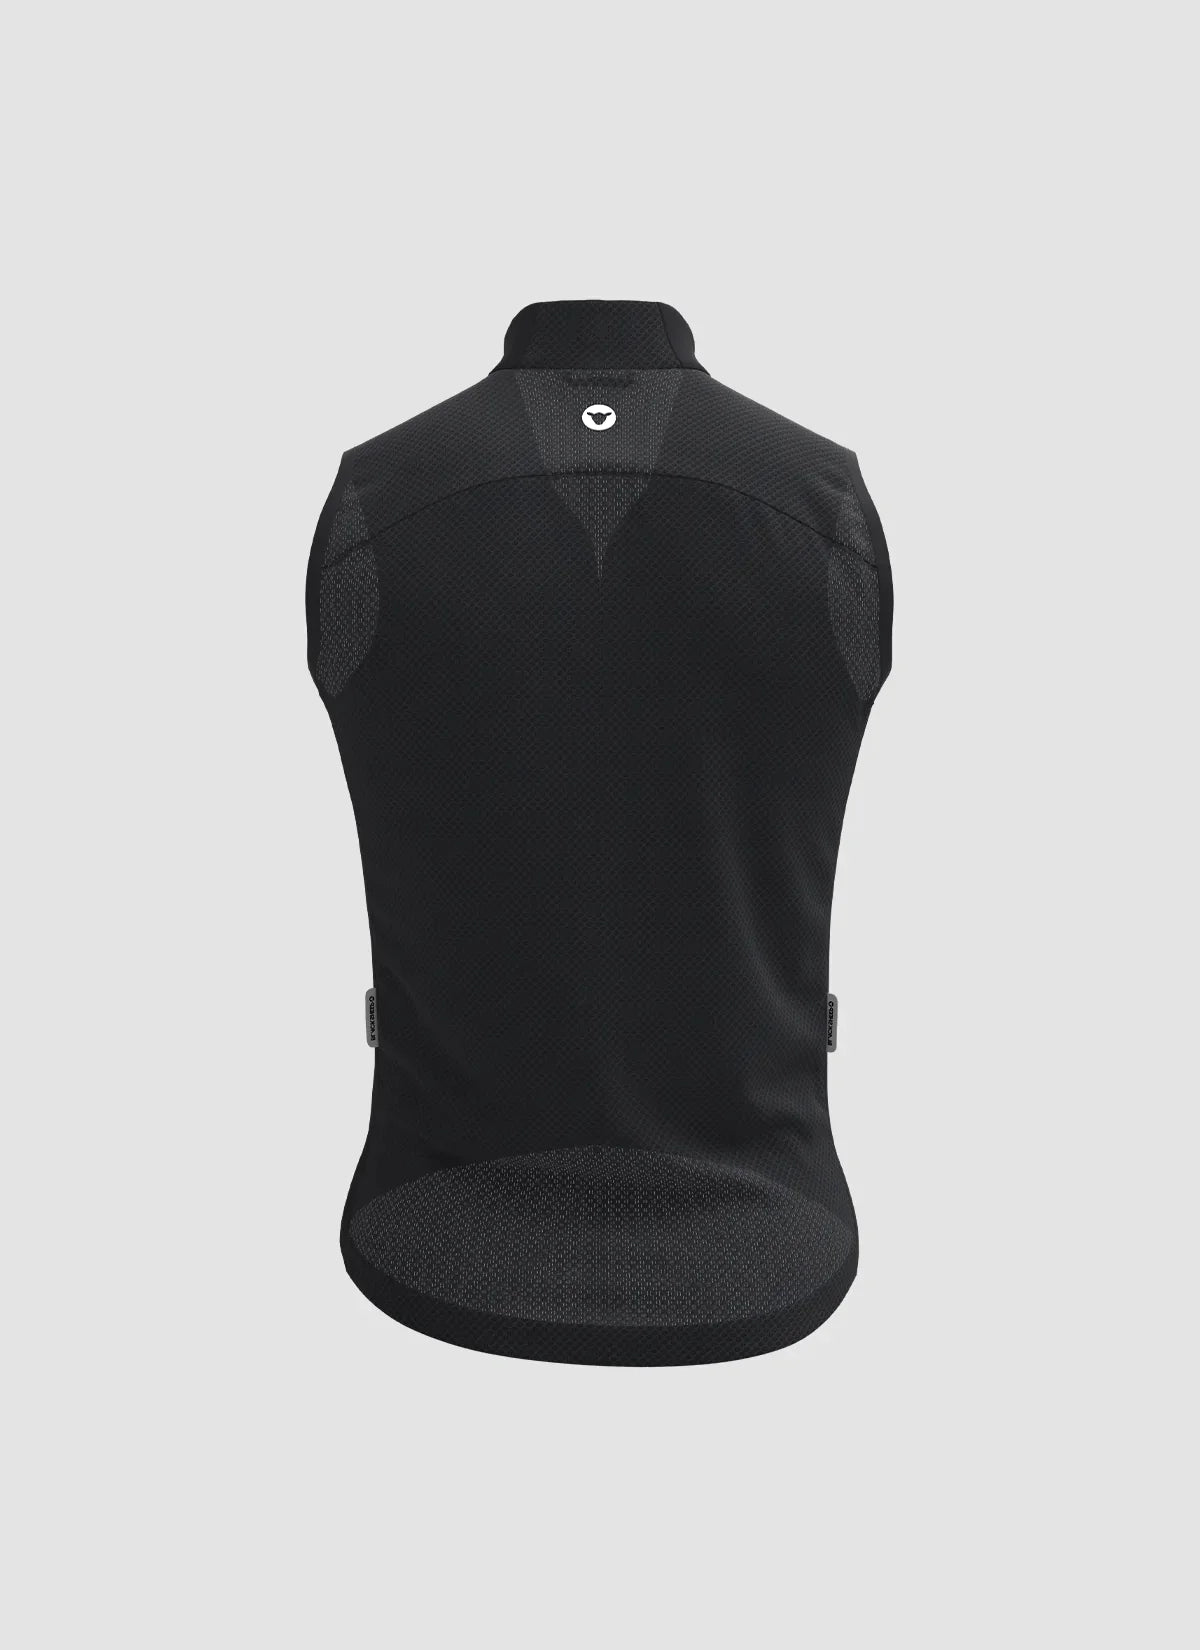 Men's Racing Vest 2.0 - Black